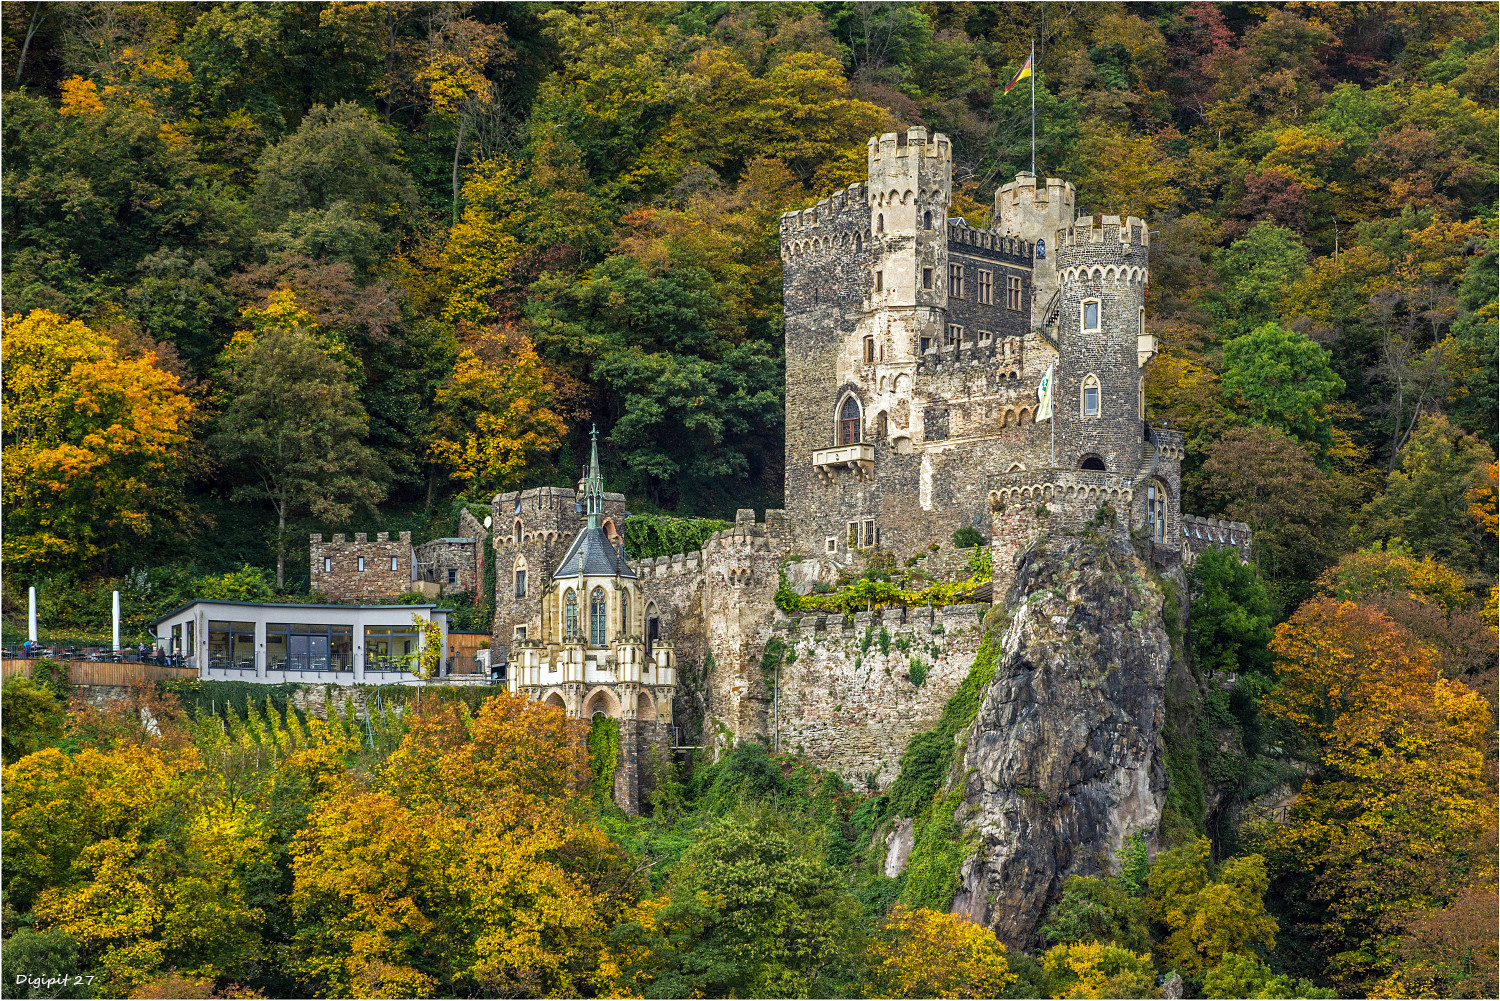 Burg Rheinstein im herbstlichen Gewand